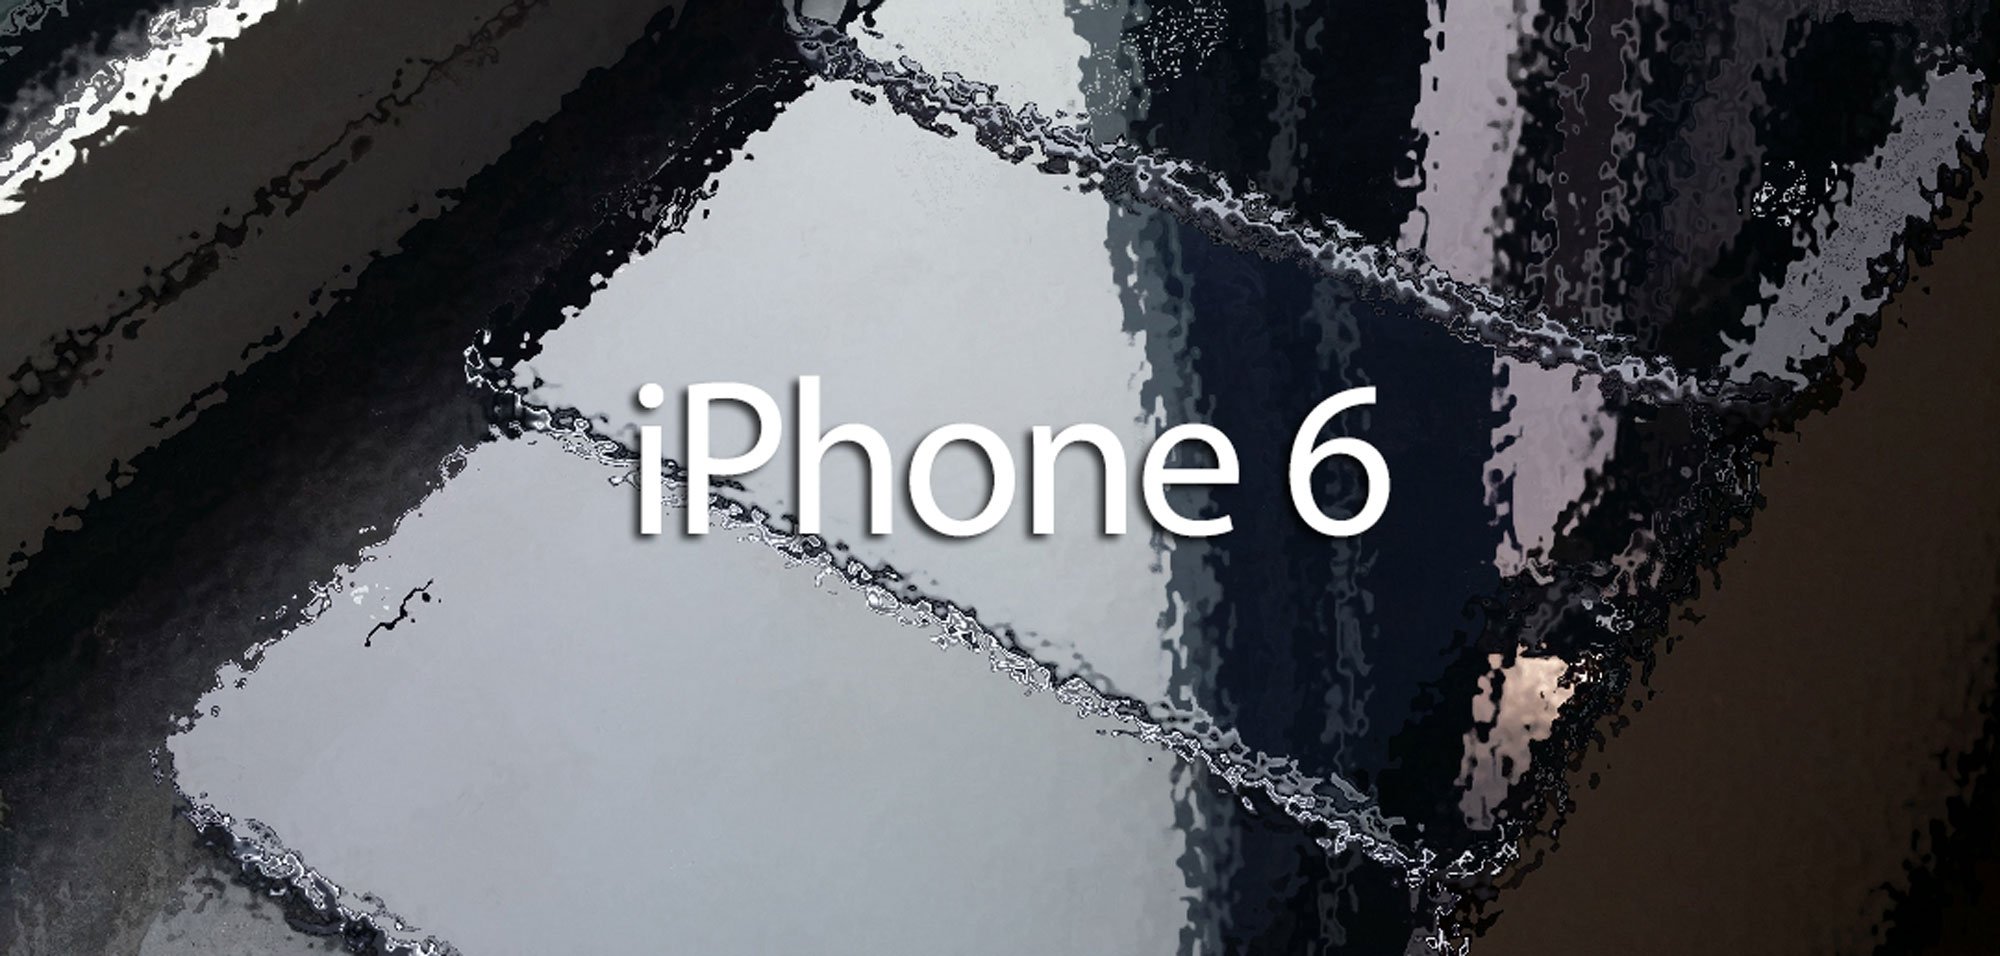 128 GB iPhone, iPhone 6 günstiger als iPhone 5s? 1